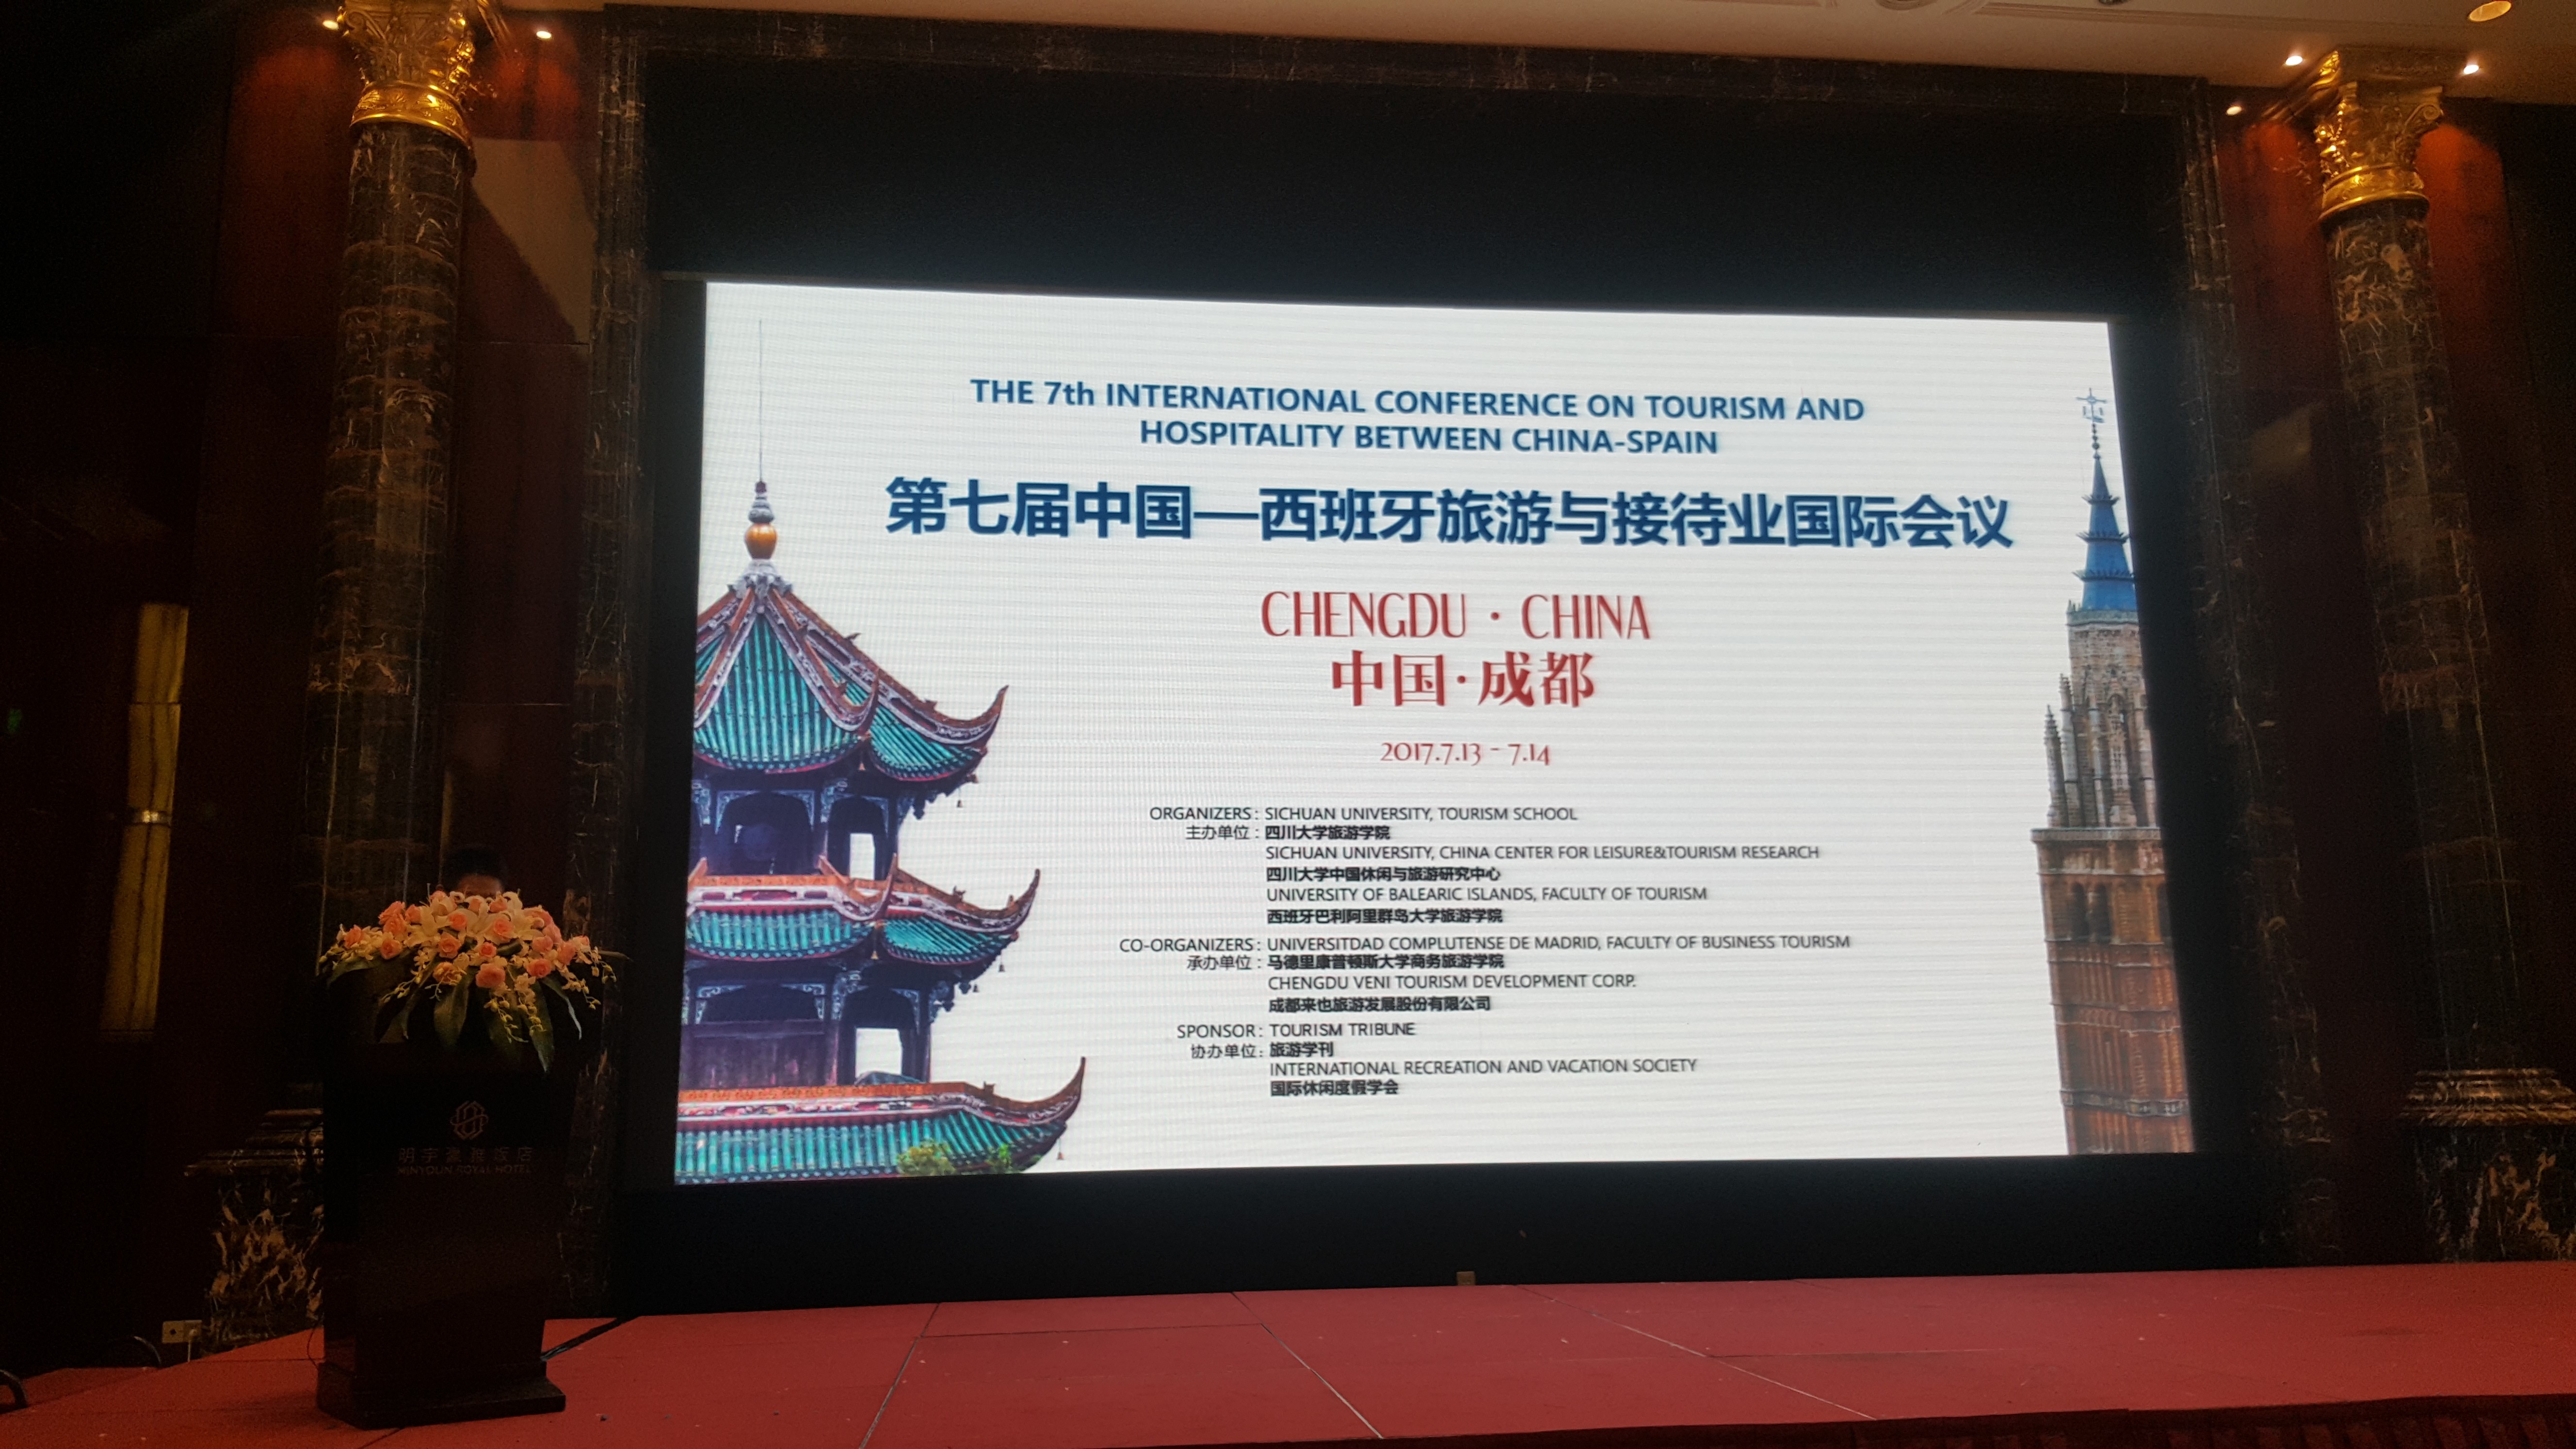 La Facultad de Comercio y Turismo co-organiza el Séptimo Congreso Internacional de Turismo entre China y España - 2